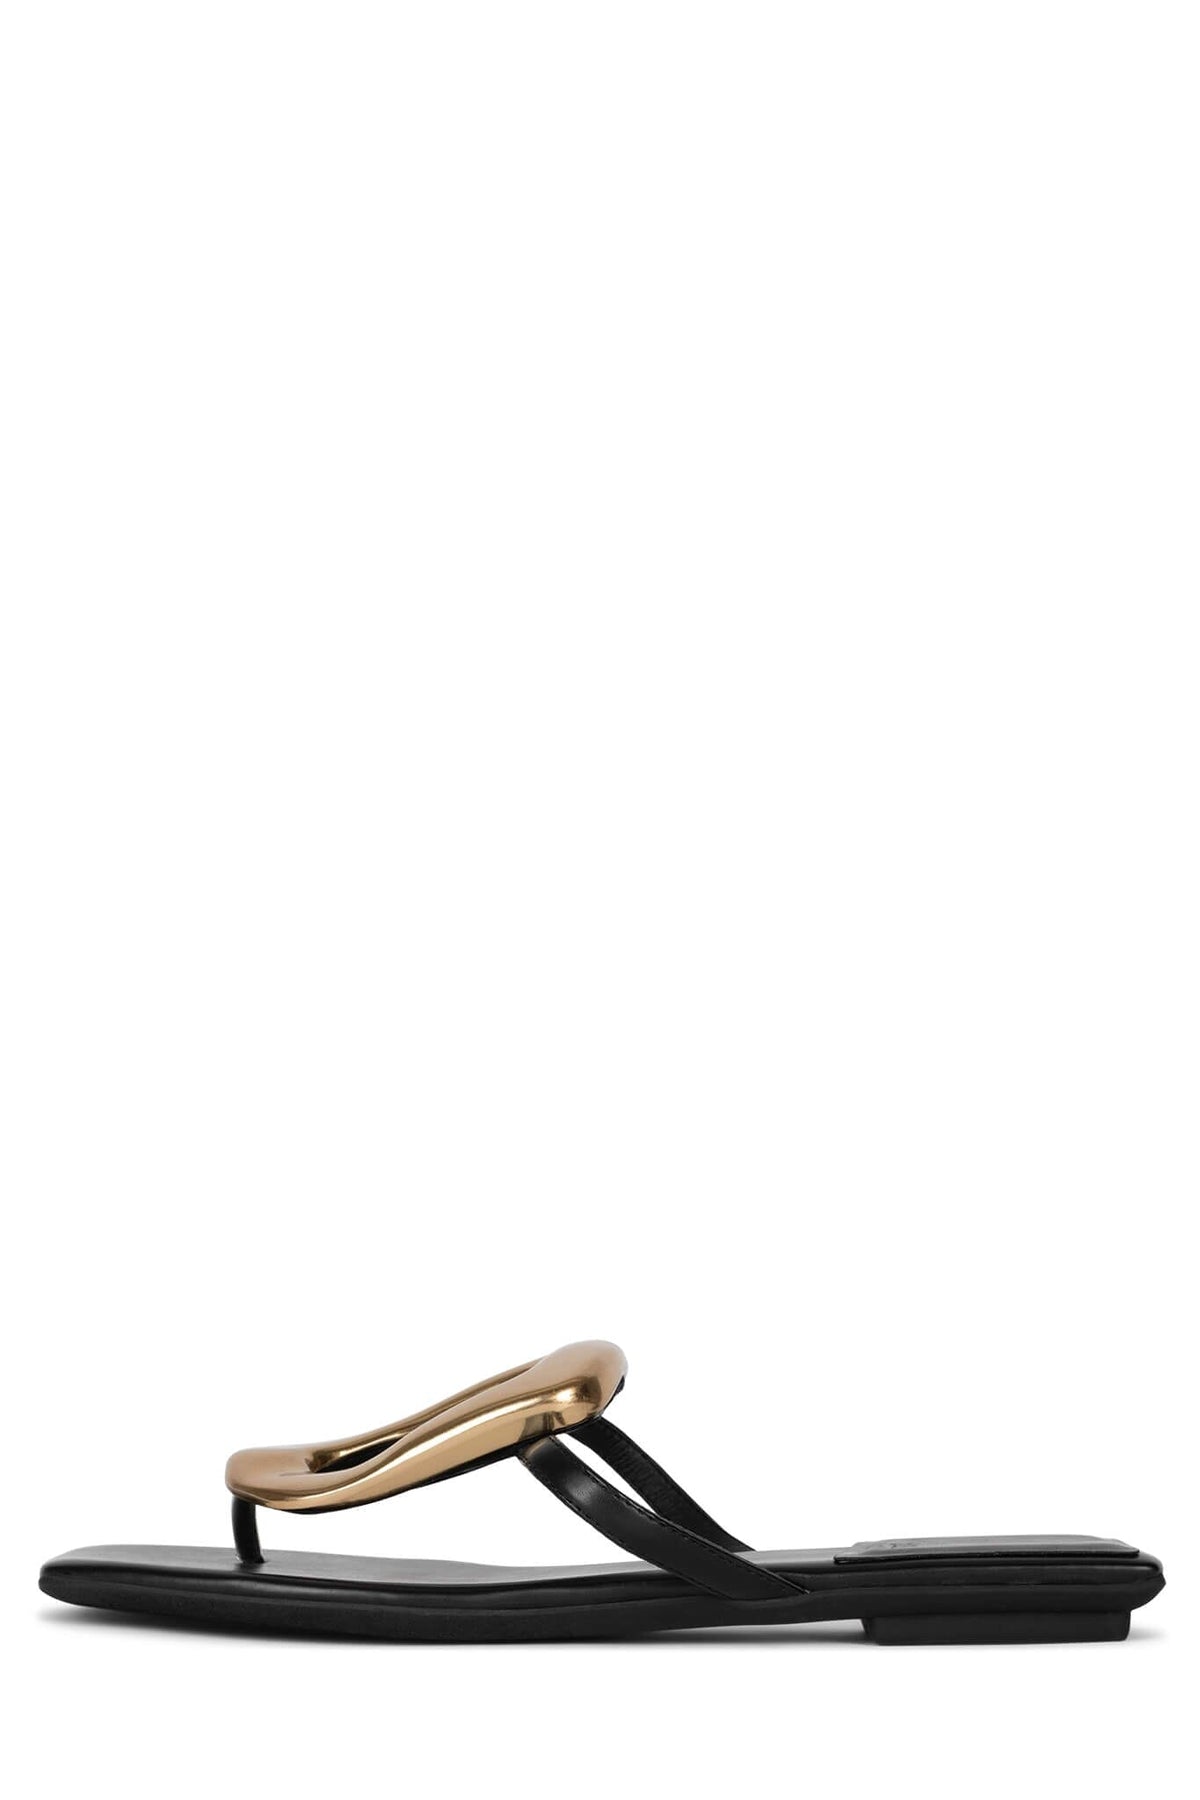 LINQUES-2 Jeffrey Campbell Flat Sandals Black Gold